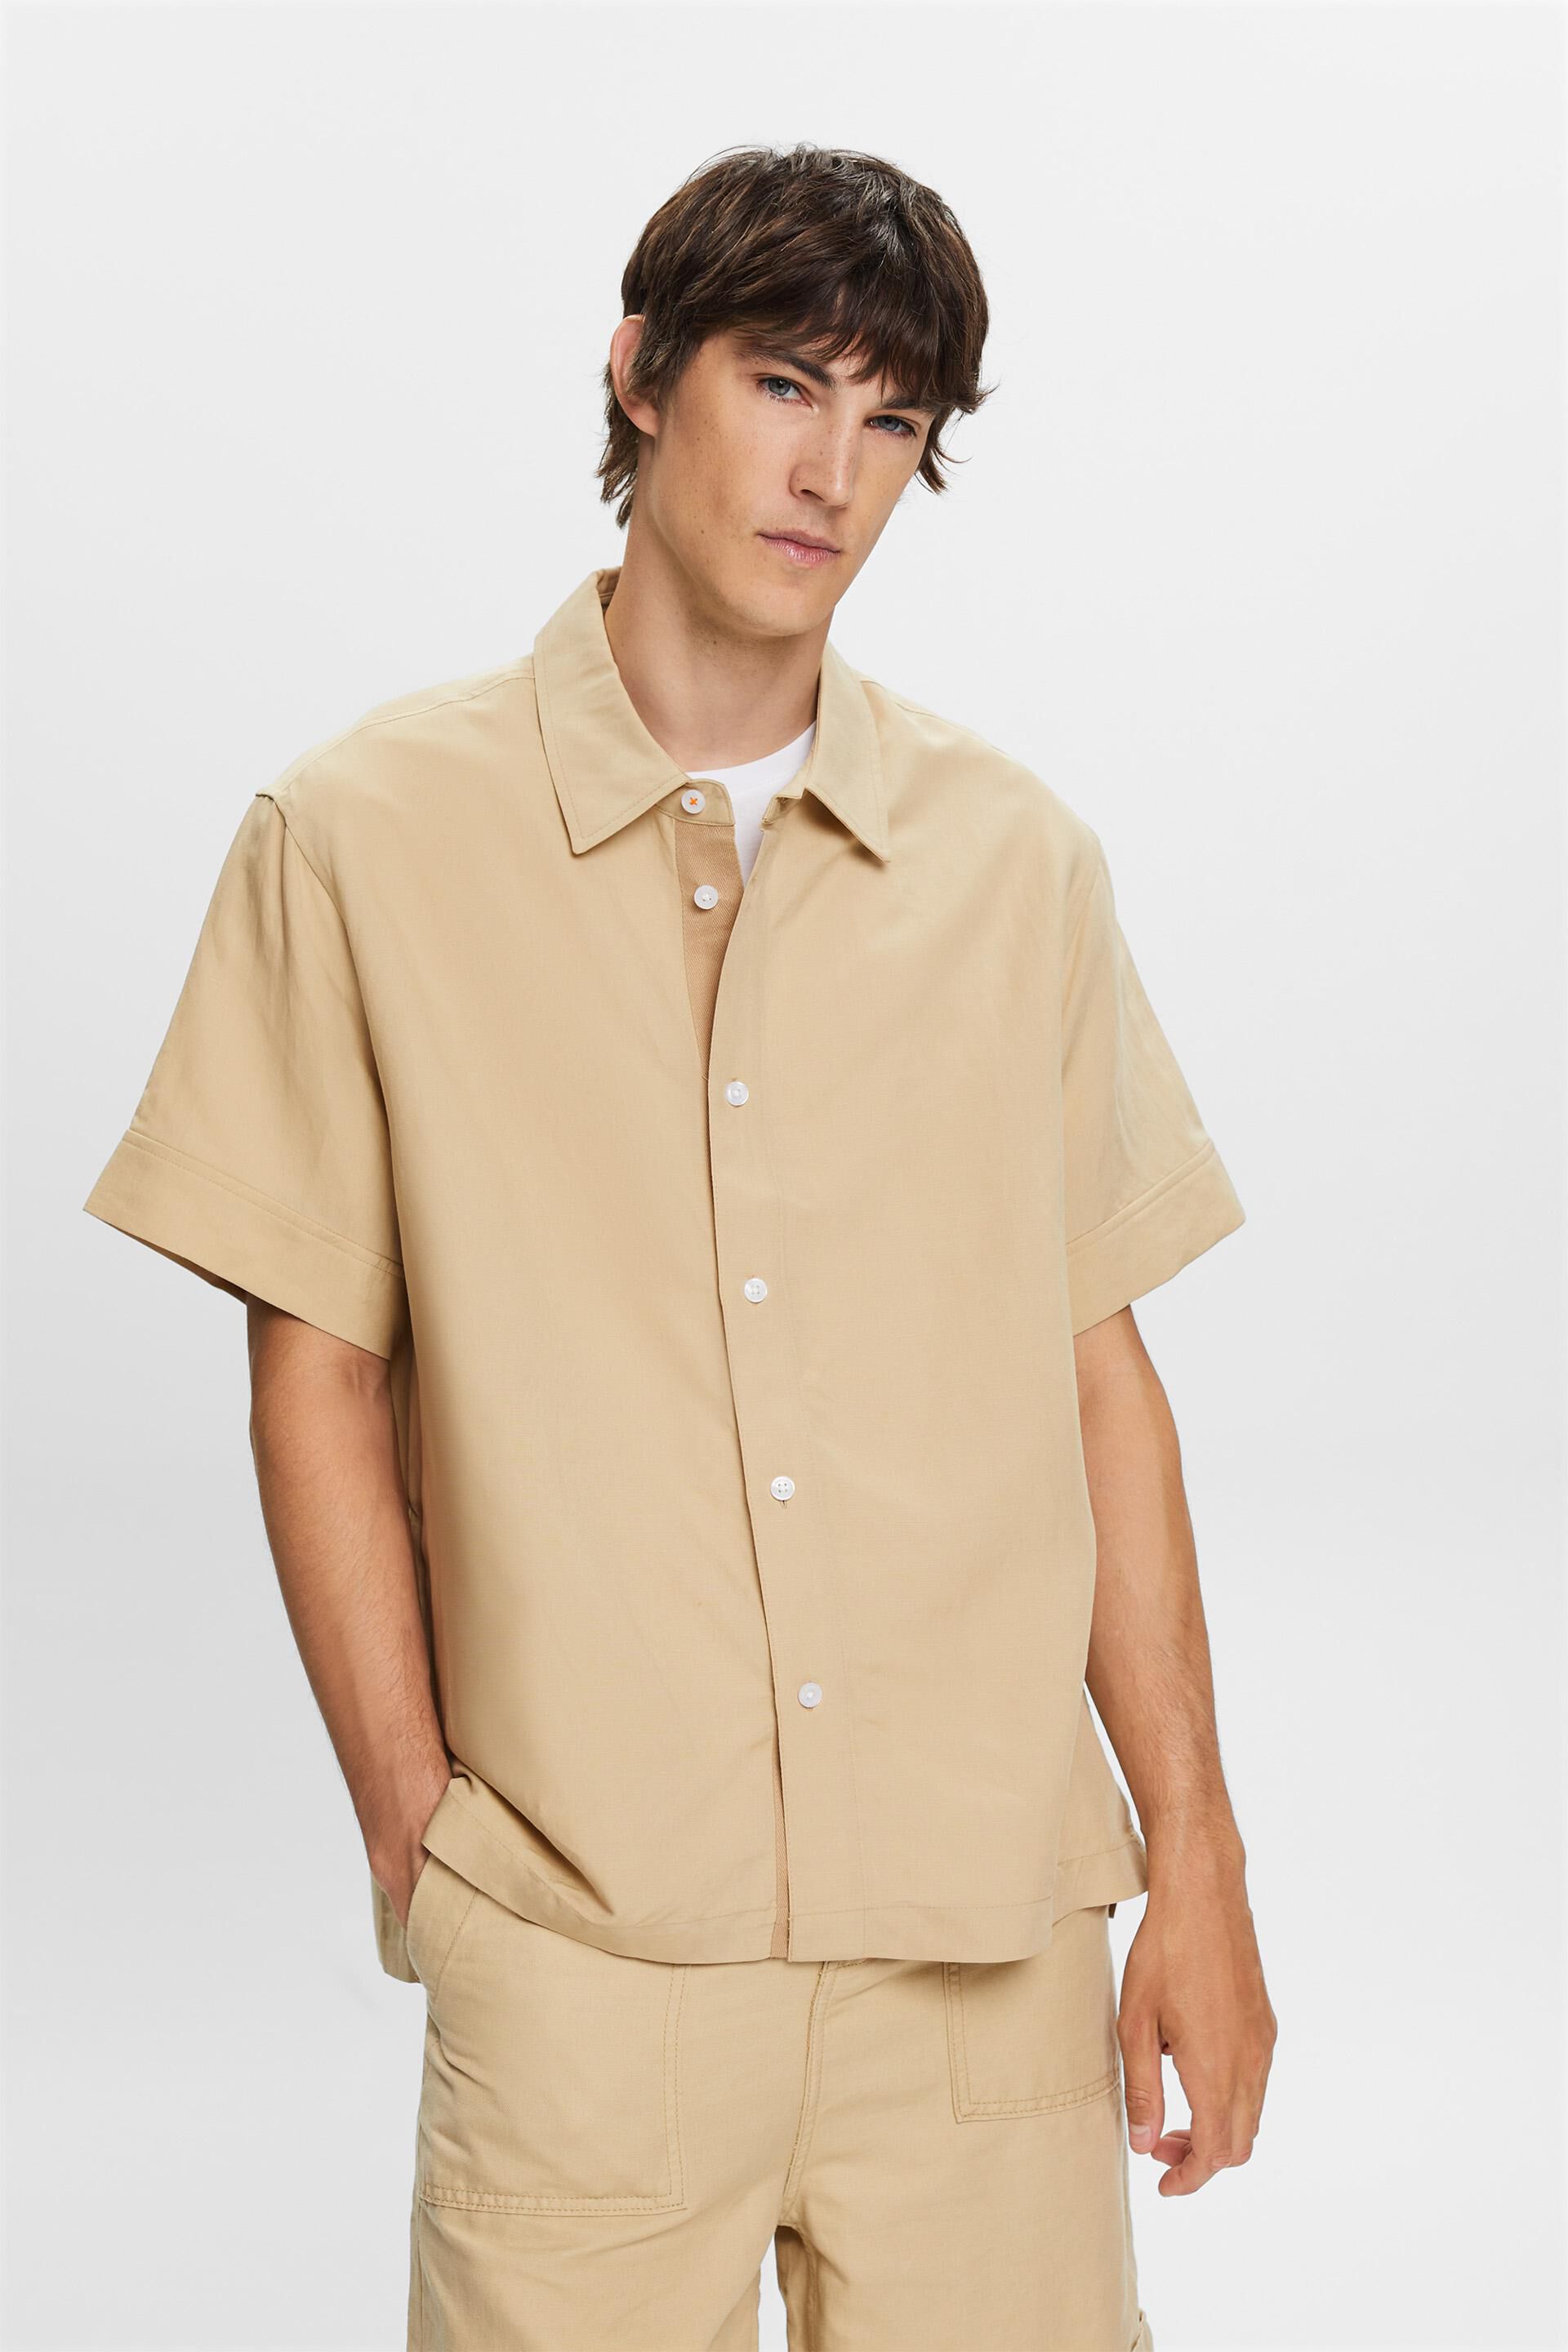 Esprit shirt, blend linen Short-sleeved